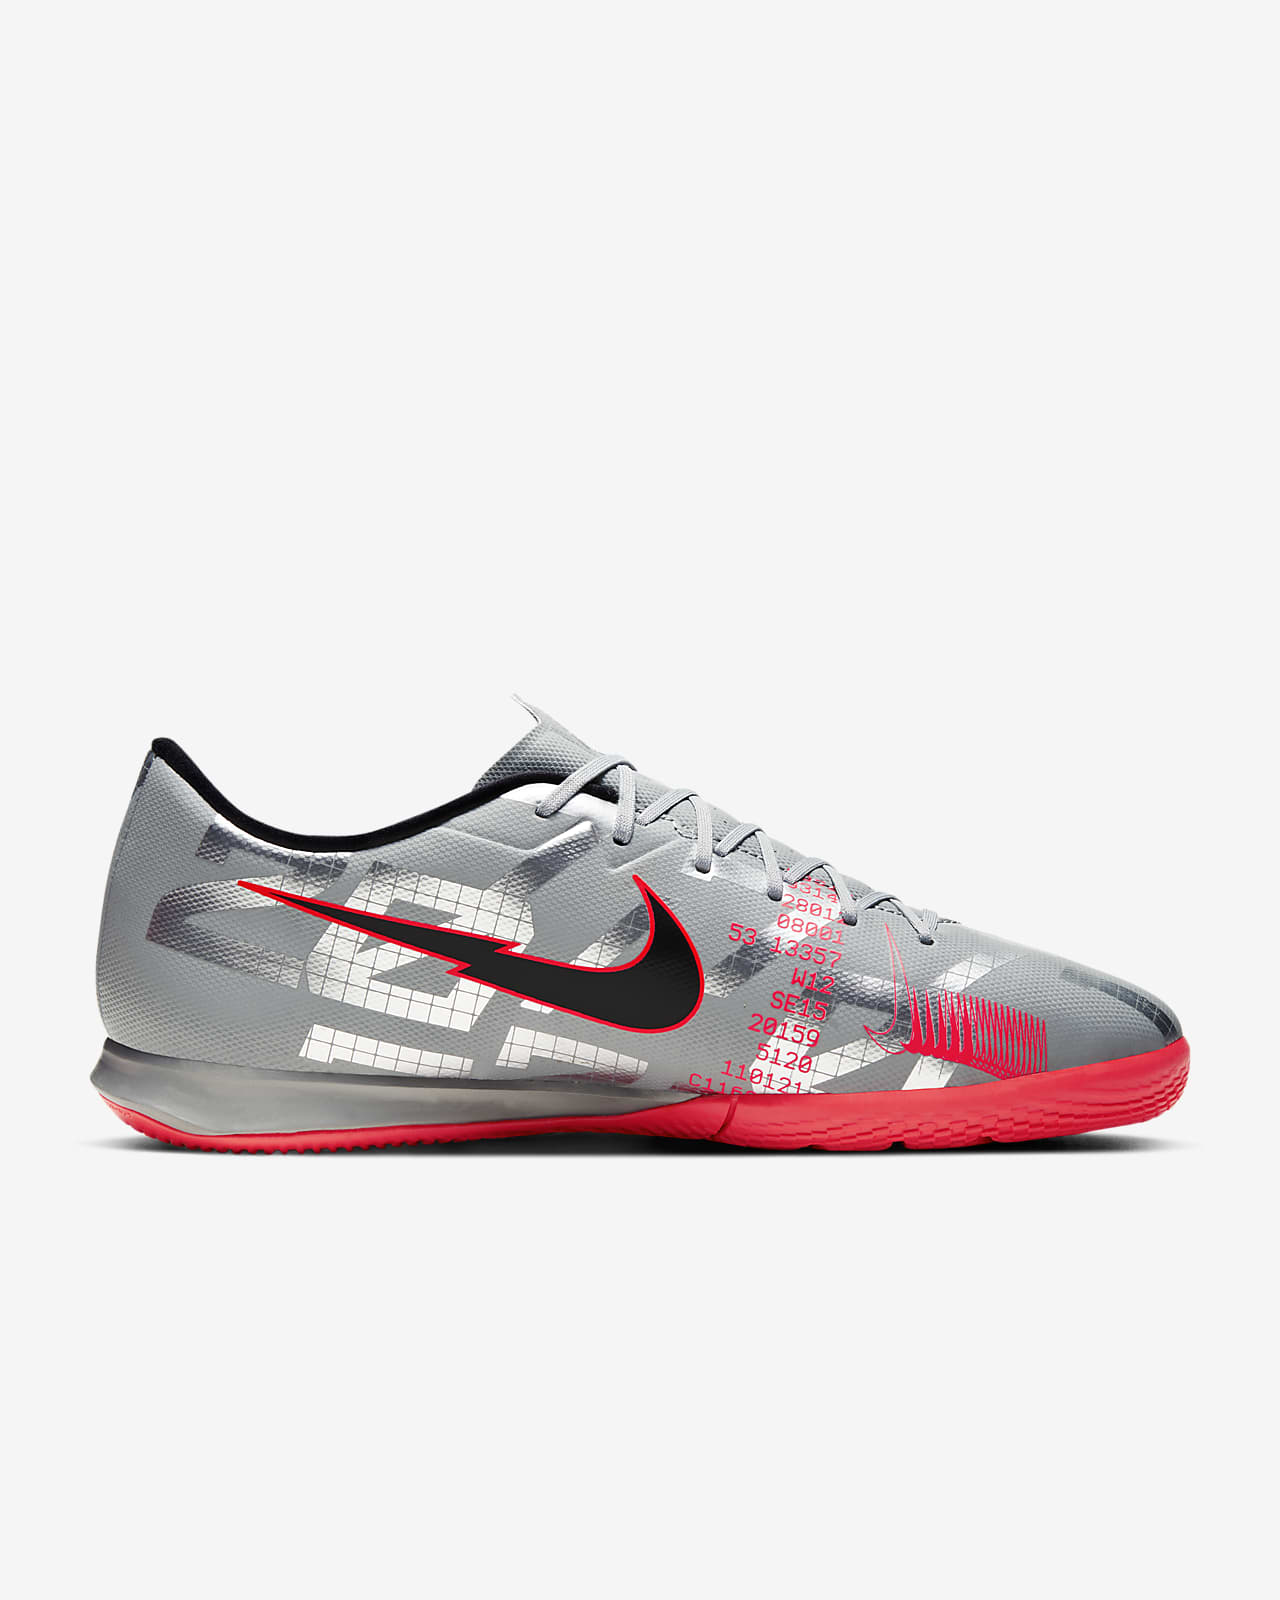 nike mercurial vapor 13 academy indoor soccer shoes